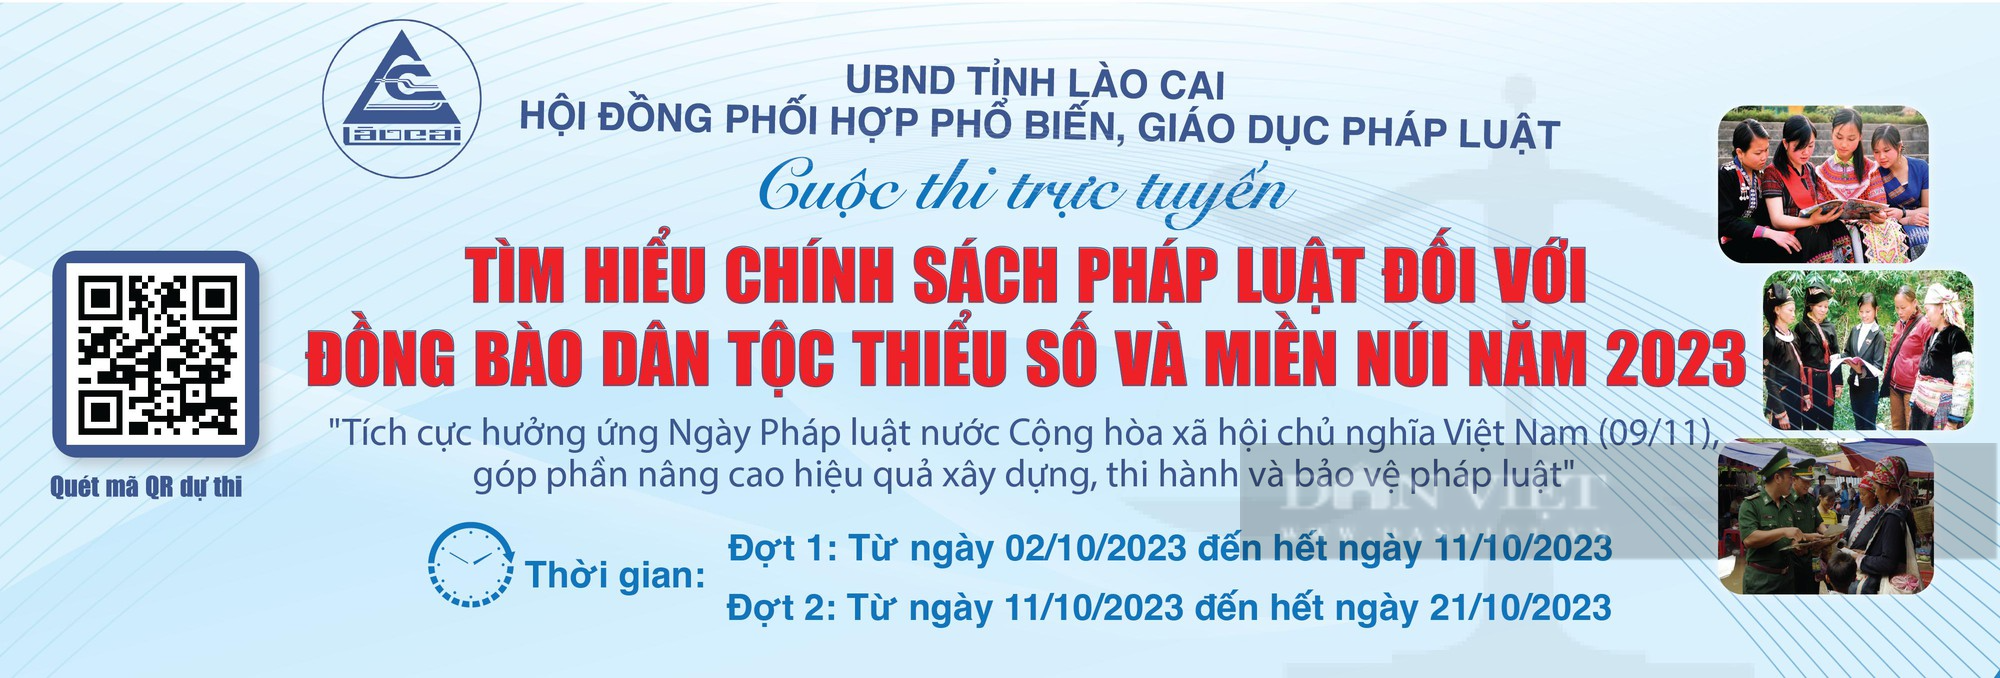 Lào Cai: Phát động Cuộc thi “Tìm hiểu chính sách, pháp luật đối với đồng bào dân tộc thiểu số và miền núi” - Ảnh 1.